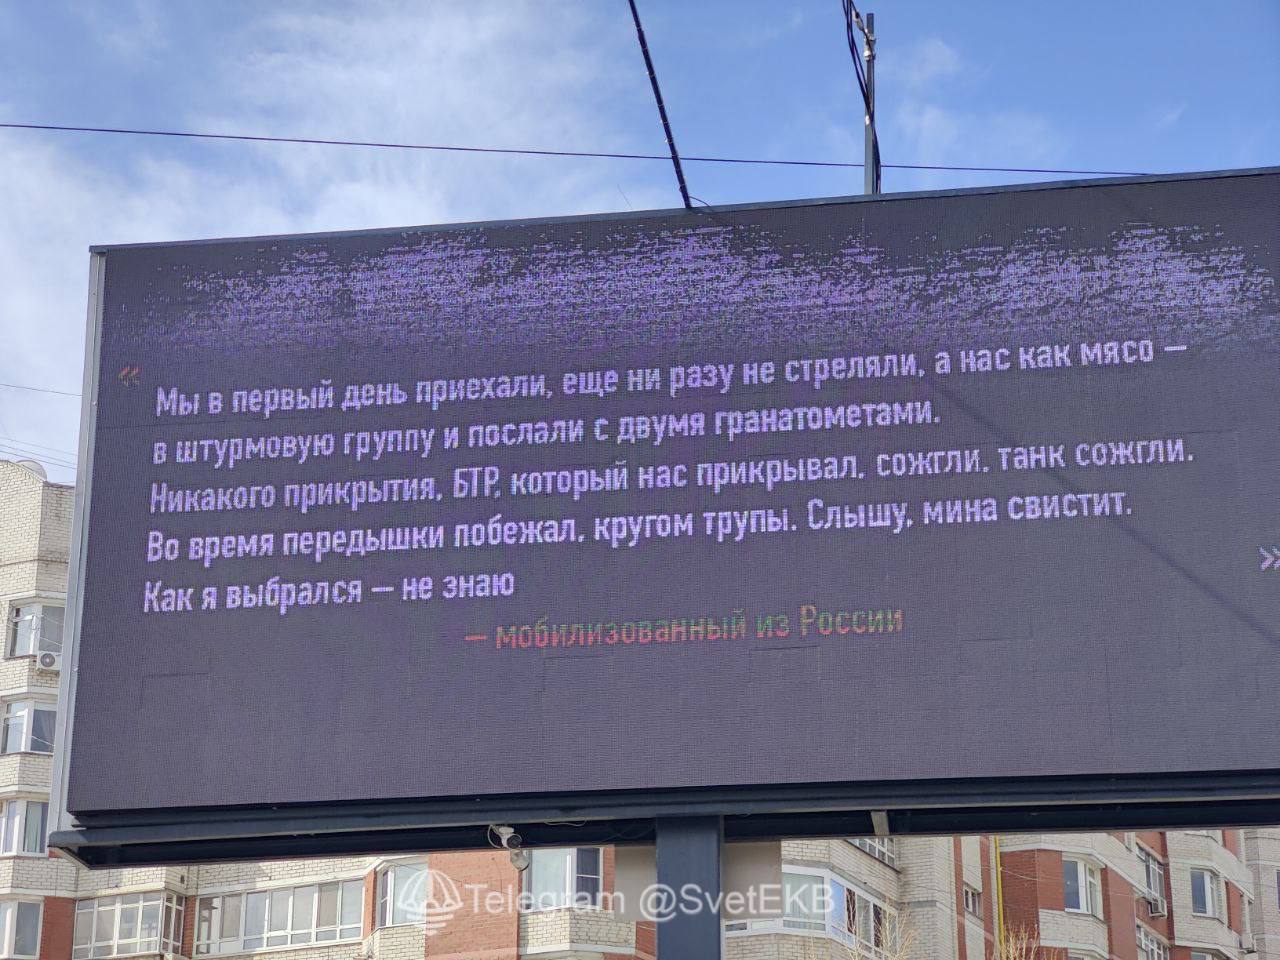 Порнографию на рекламном щите запустили из Сибири